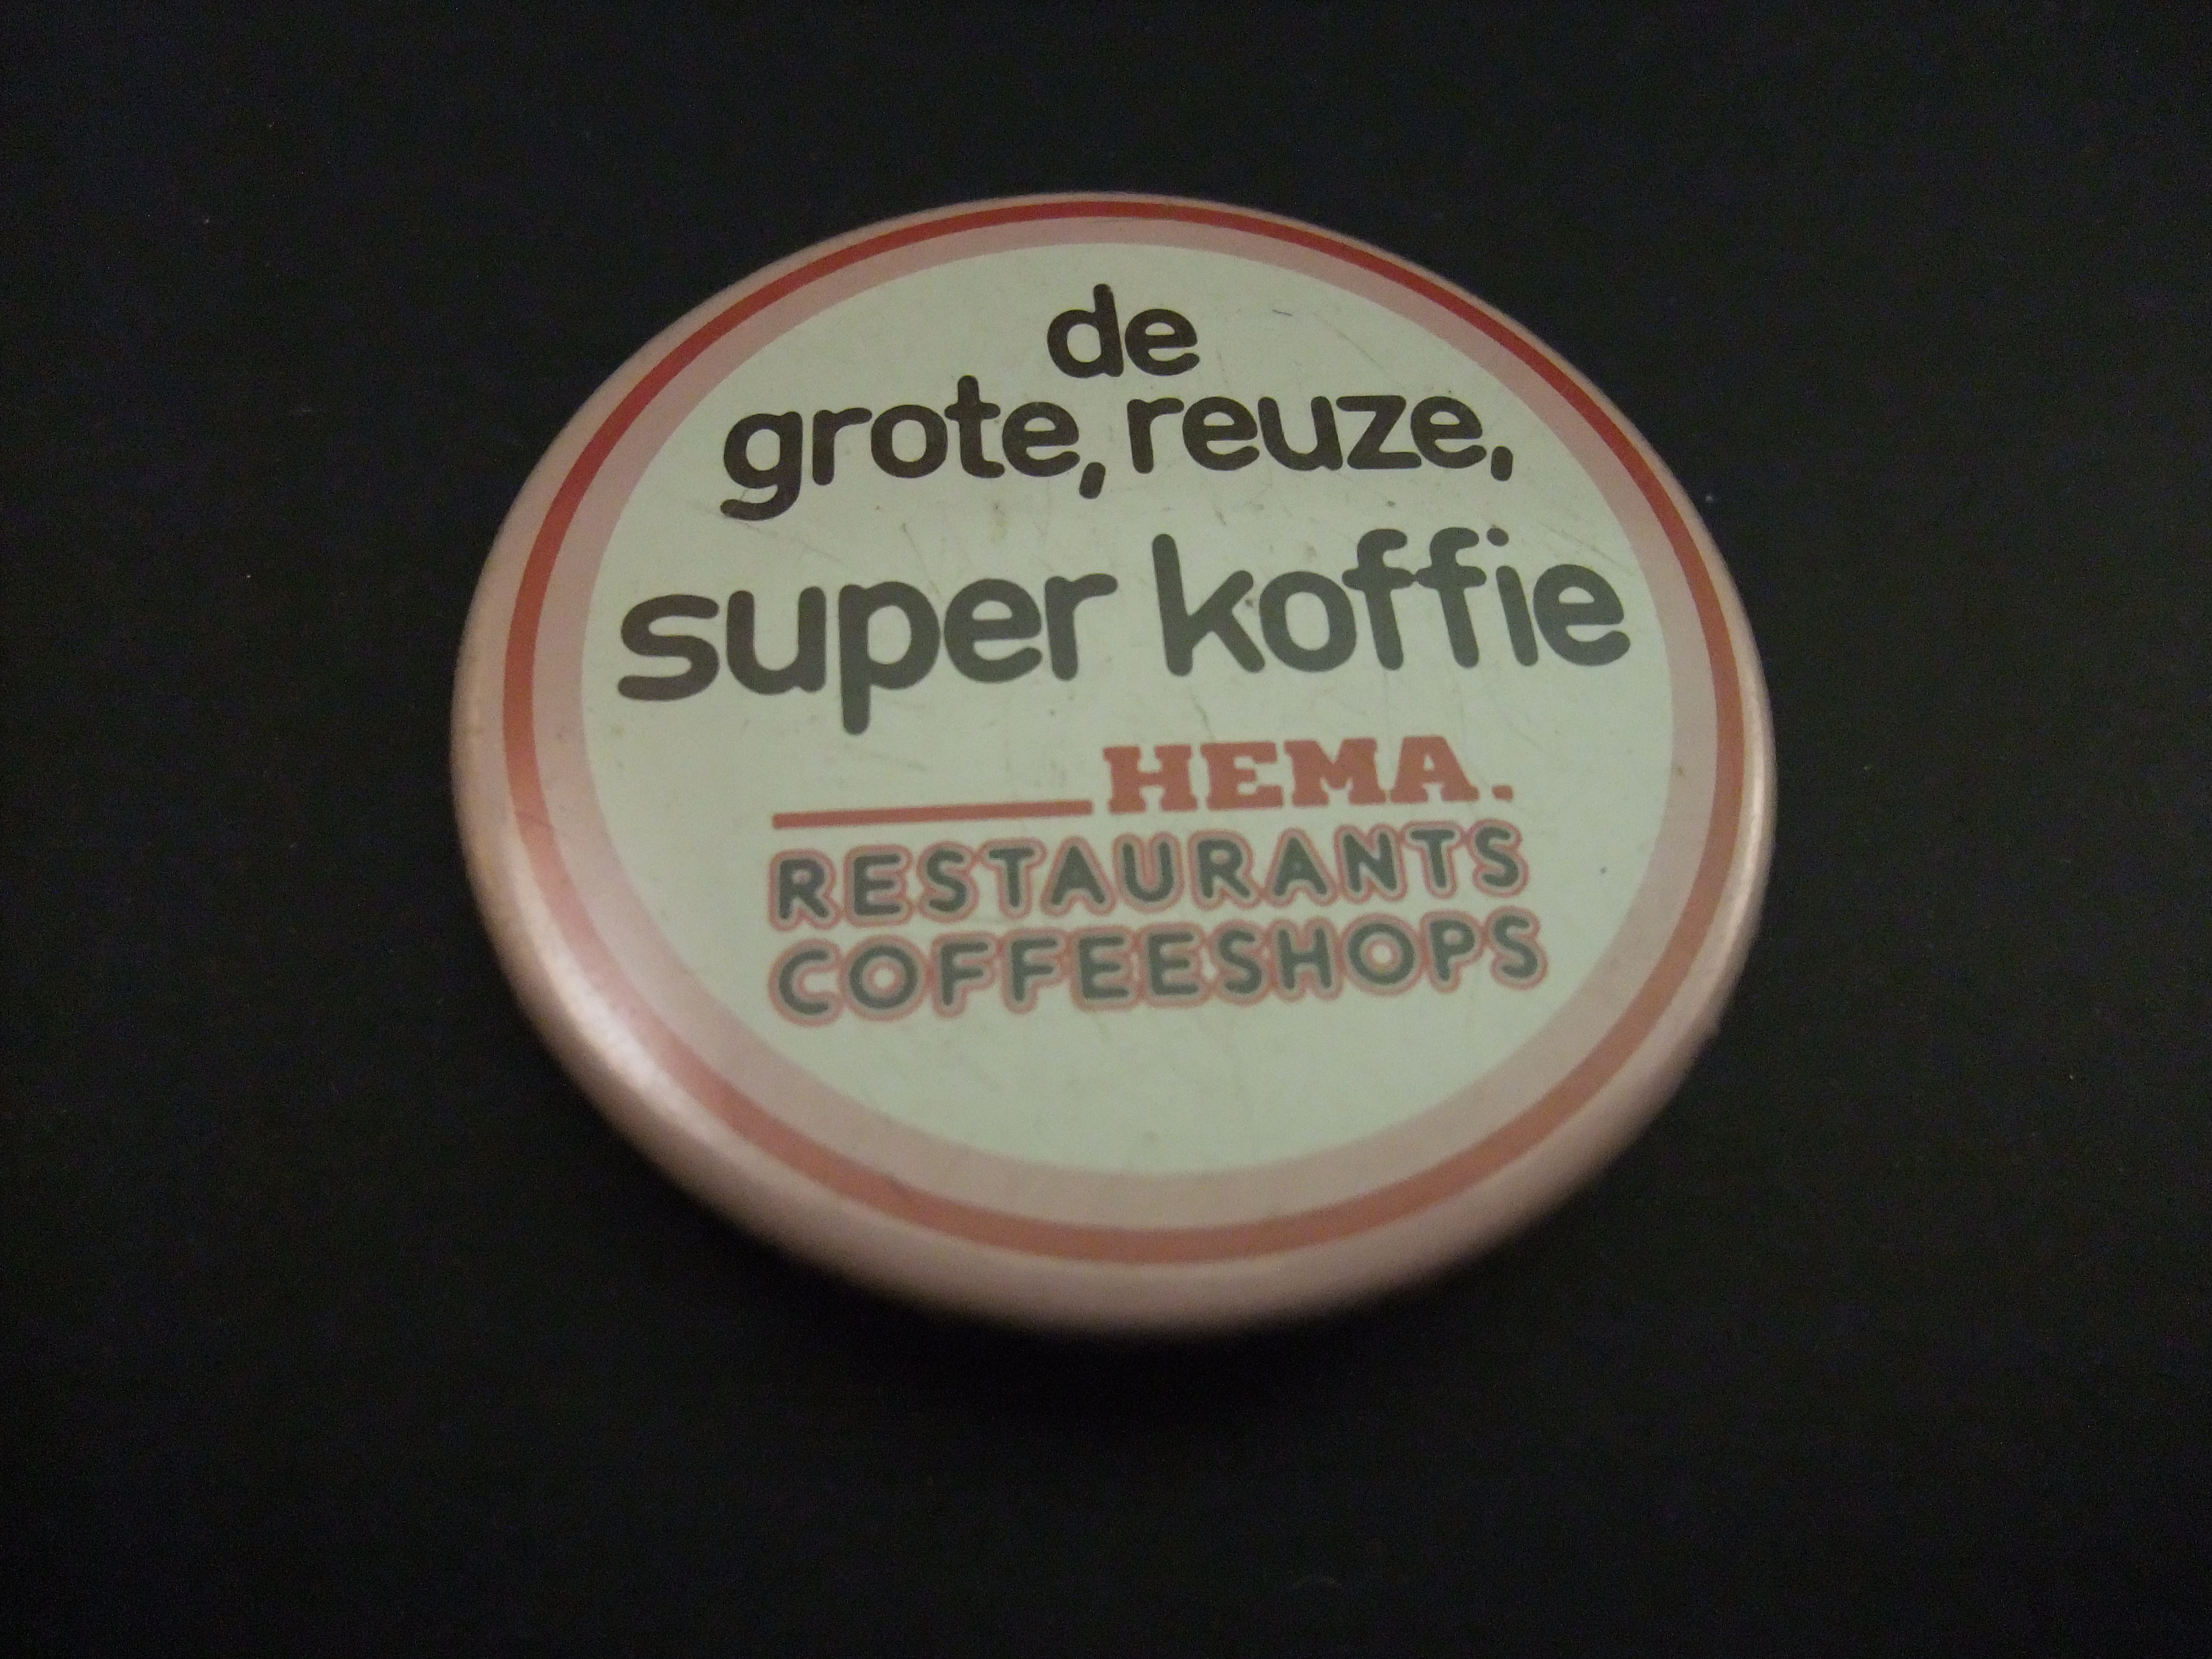 Hema ( Hollandsche Eenheidsprijzen Maatschappij Amsterdam) restaurants, coffeeshops, reuze grote,super,koffie